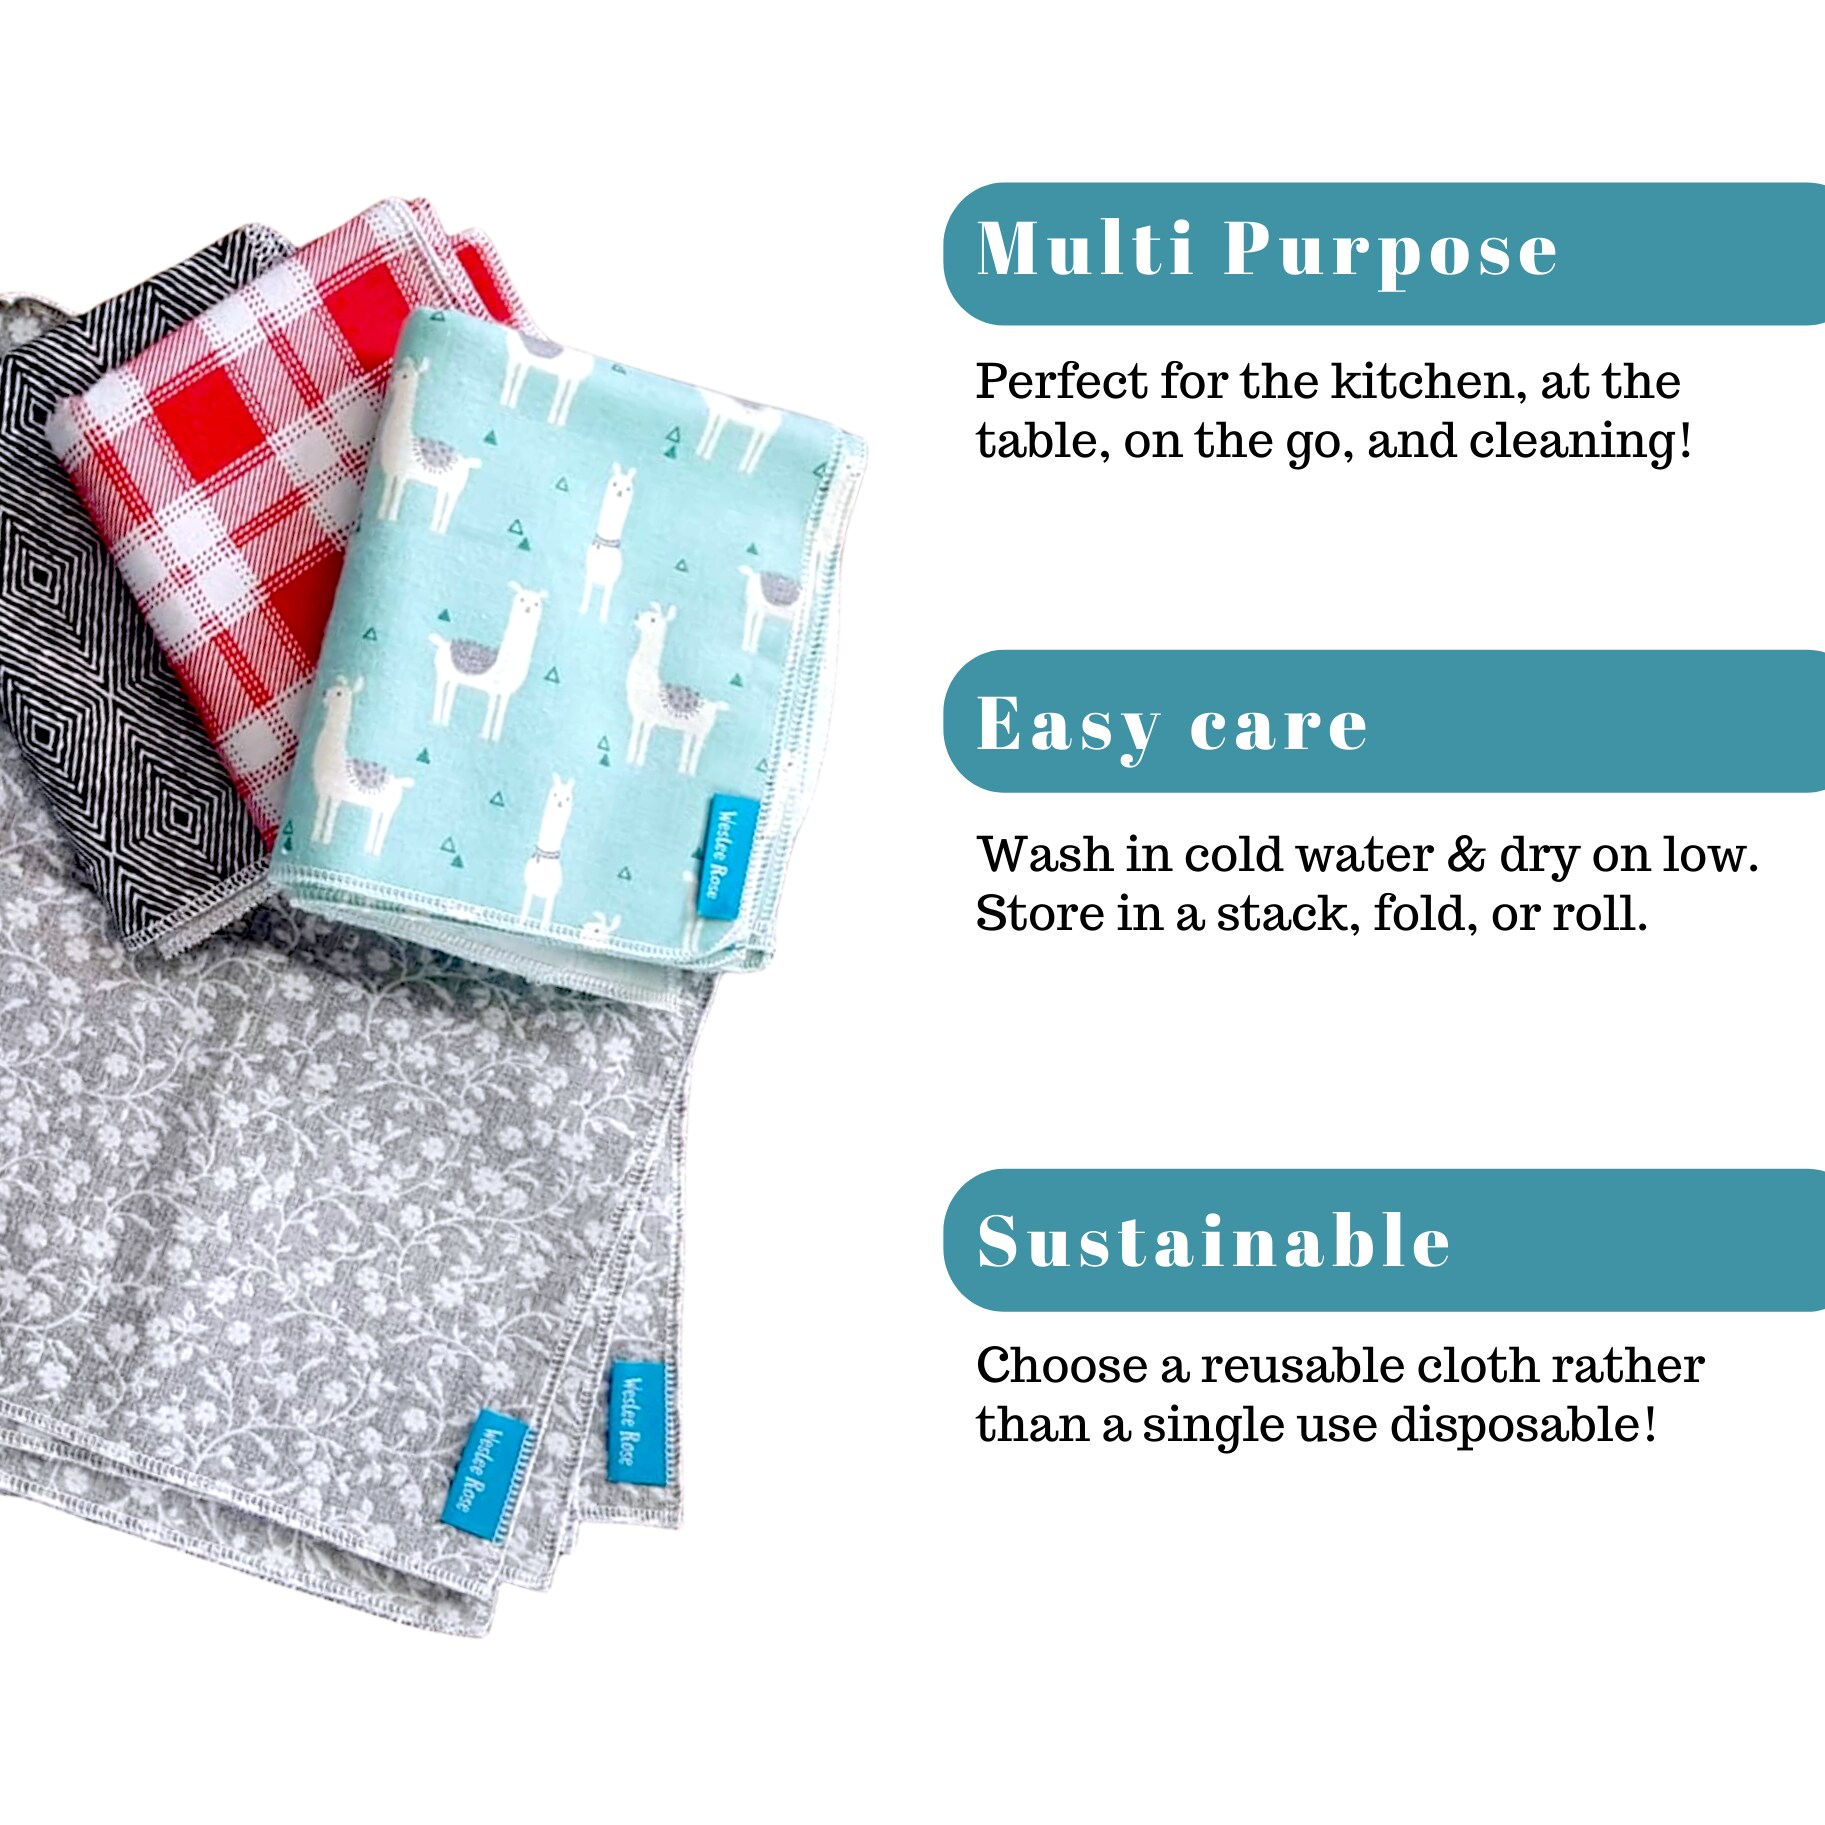 Reusable Un-Paper Towel (Select-A-Size Roll)